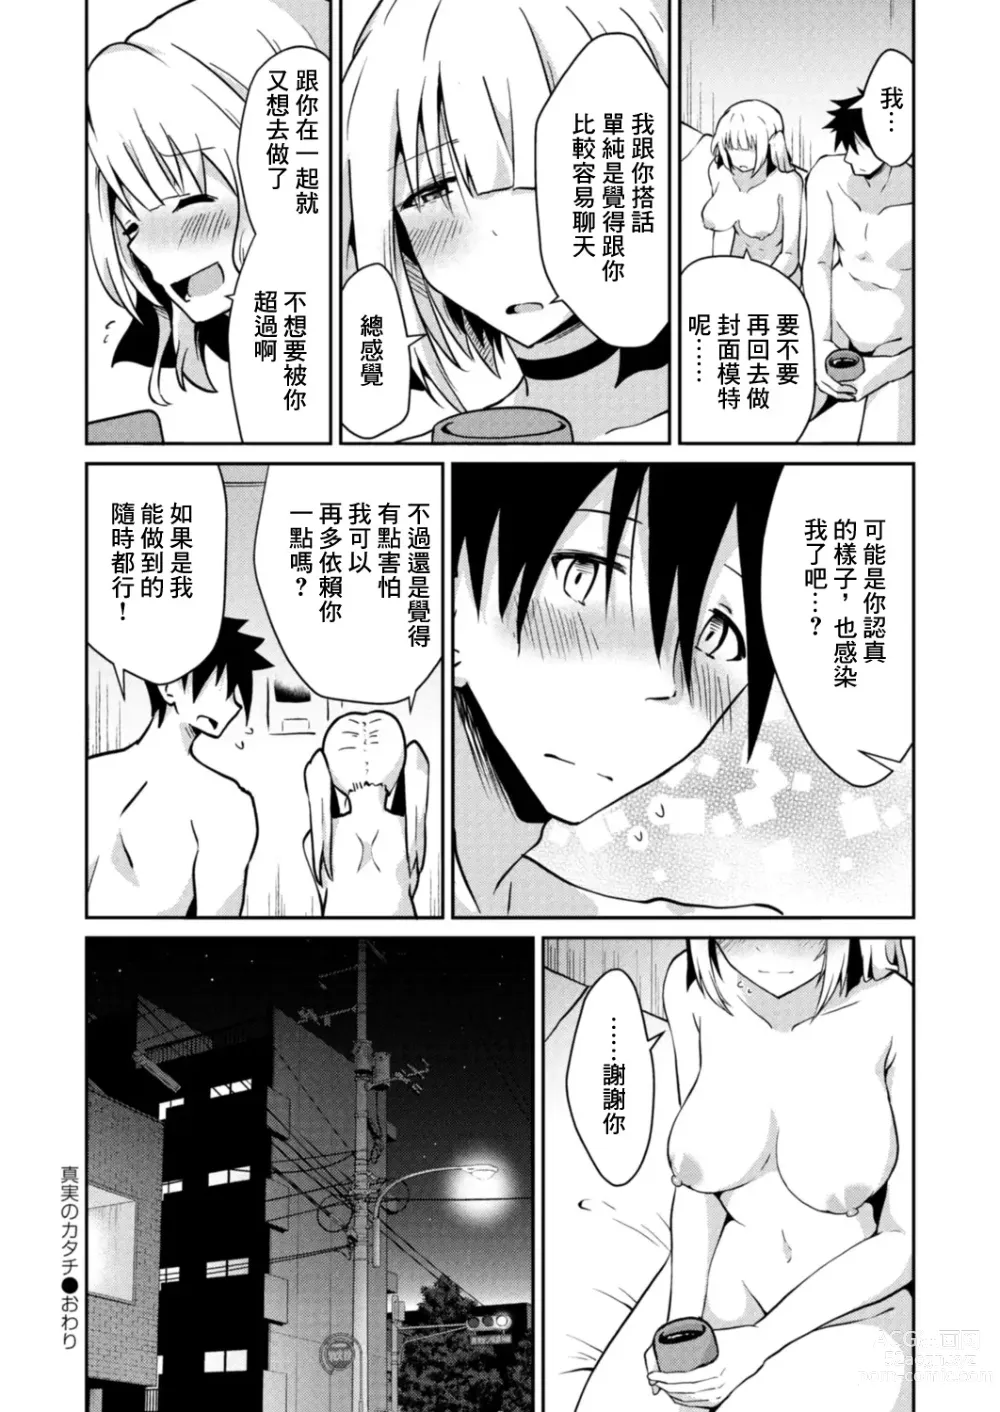 Page 30 of manga Shinjitsu no Katachi